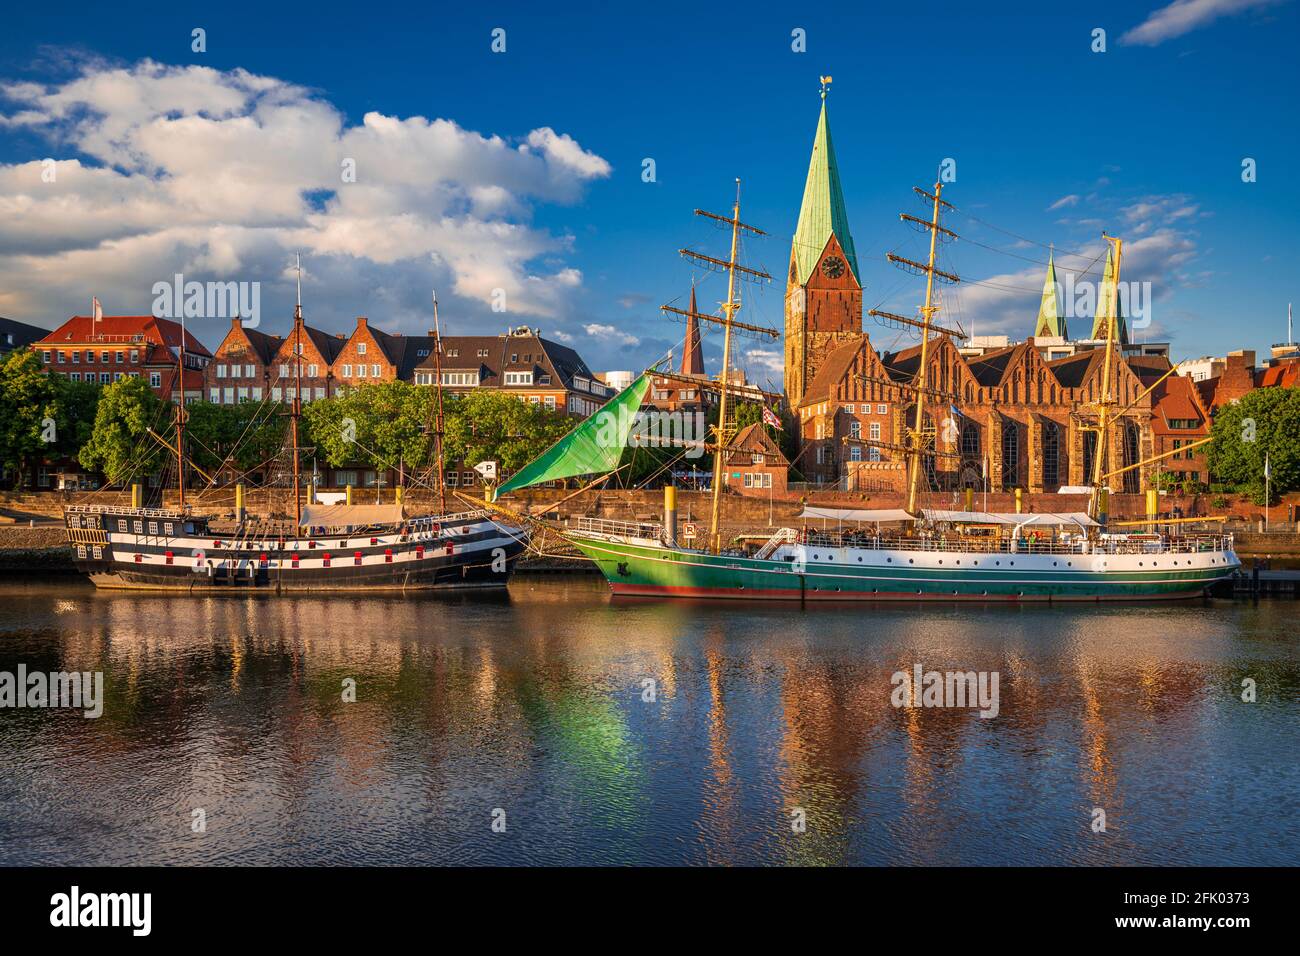 Ville historique de Brême avec de vieux bateaux à voile sur le Weser, en Allemagne Banque D'Images